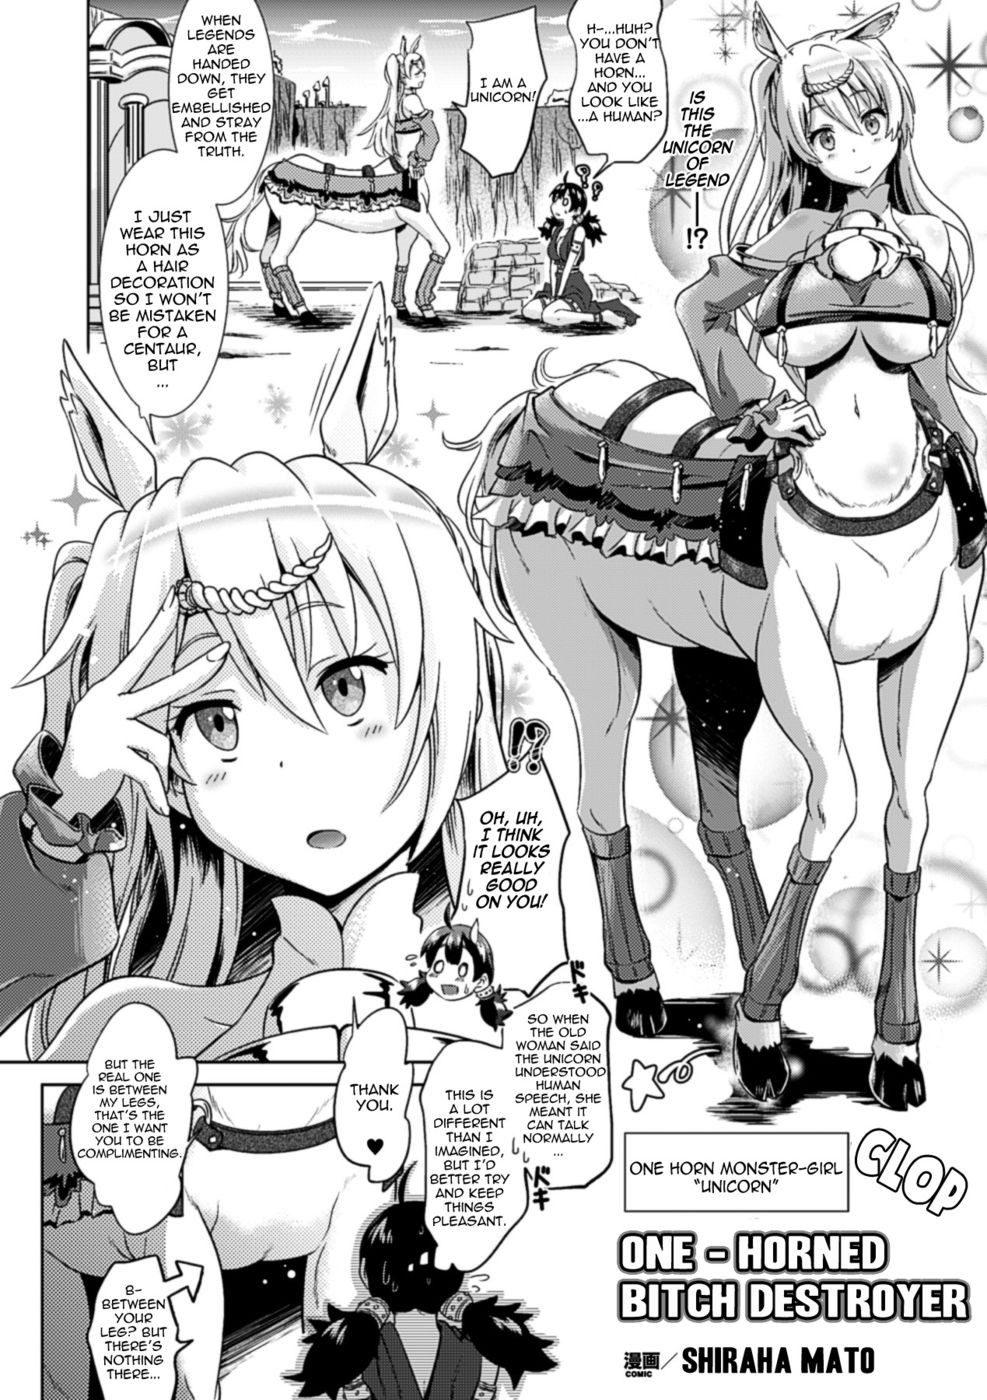 Futanari comics sex #69347403